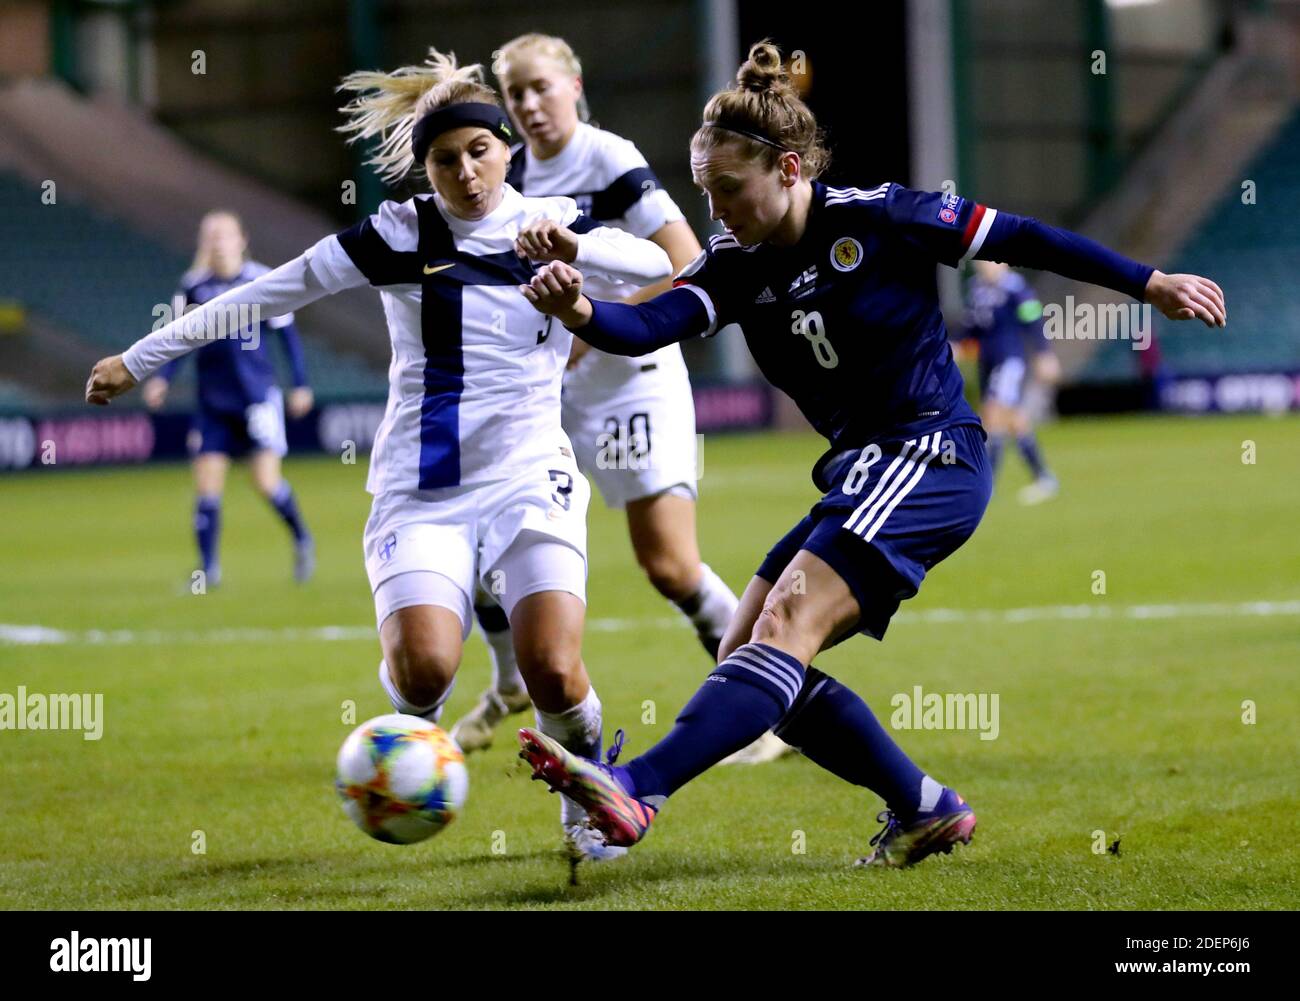 La finlandesa Tuija Hyyrynen (izquierda) y la escocesa Kim Little batallar por el balón durante el partido de la UEFA Women's Euro 2021 Qualifying Group E en Easter Road, Edimburgo. Foto de stock